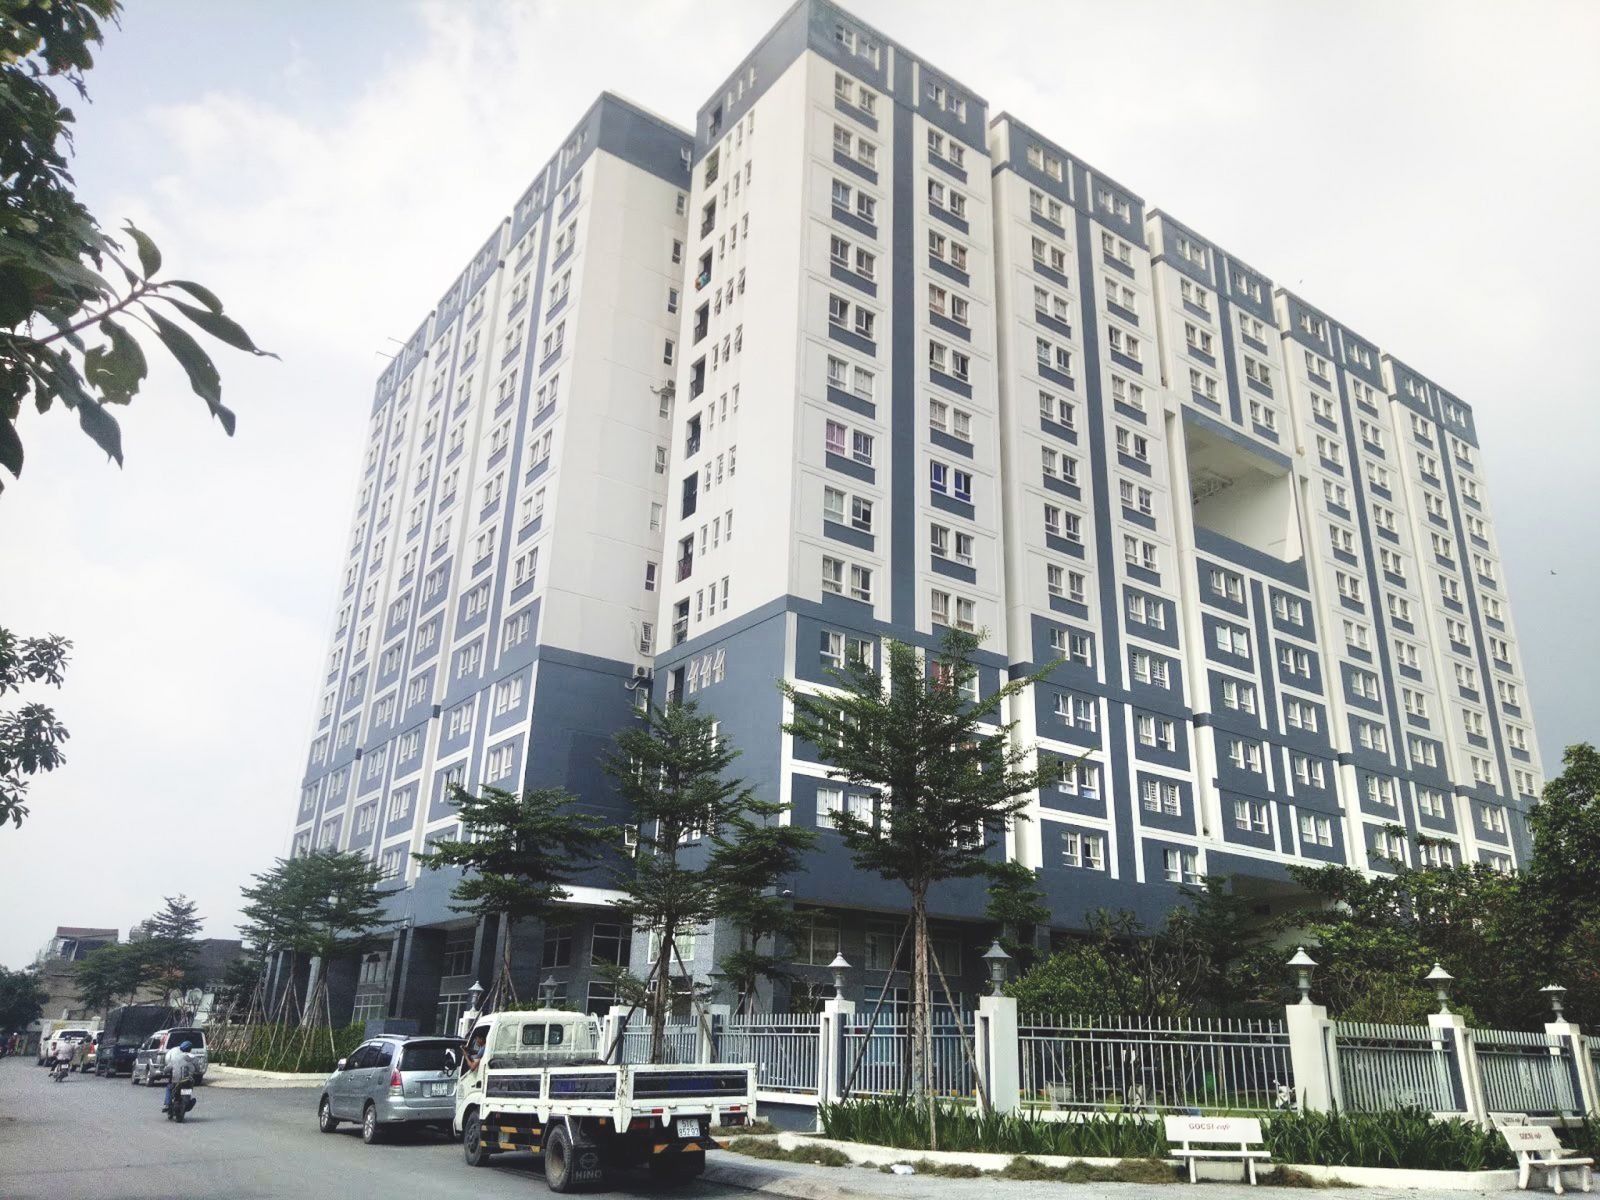 Khu vực có nhiều căn hộ chung cư mua bán nhất quận Gò Vấp là phường nào?